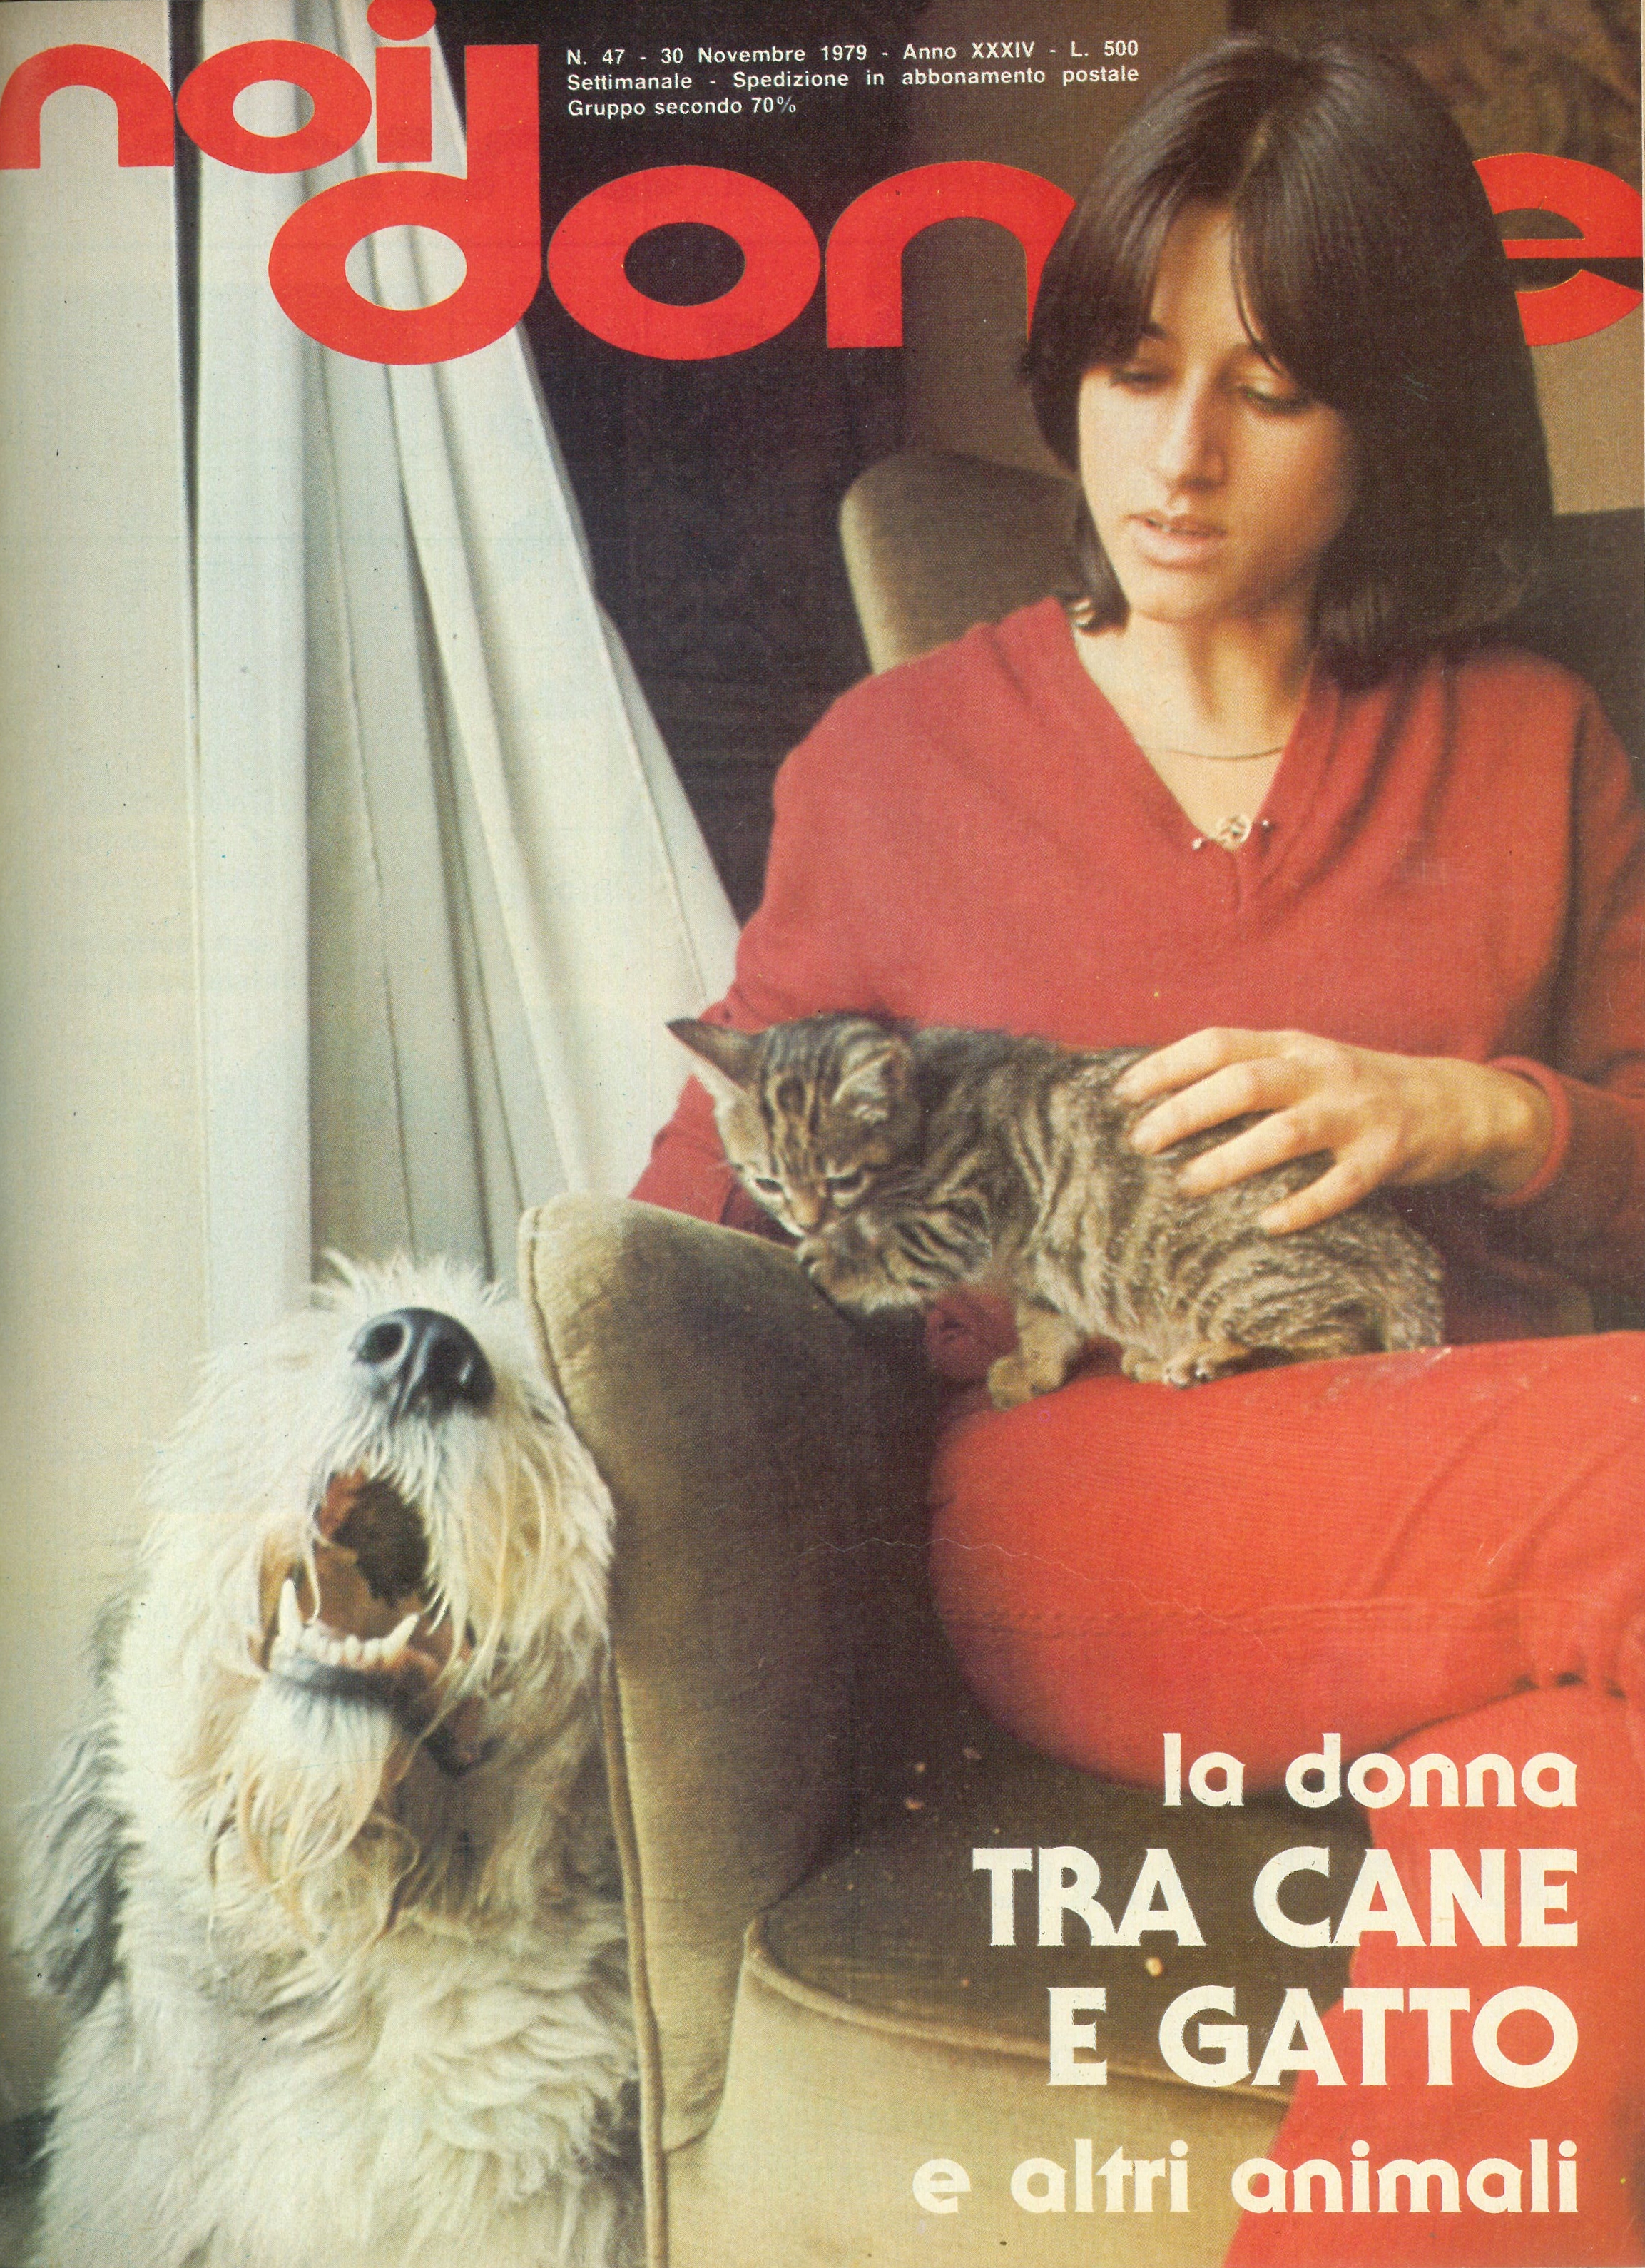 Foto: La donna tra cane e gatto